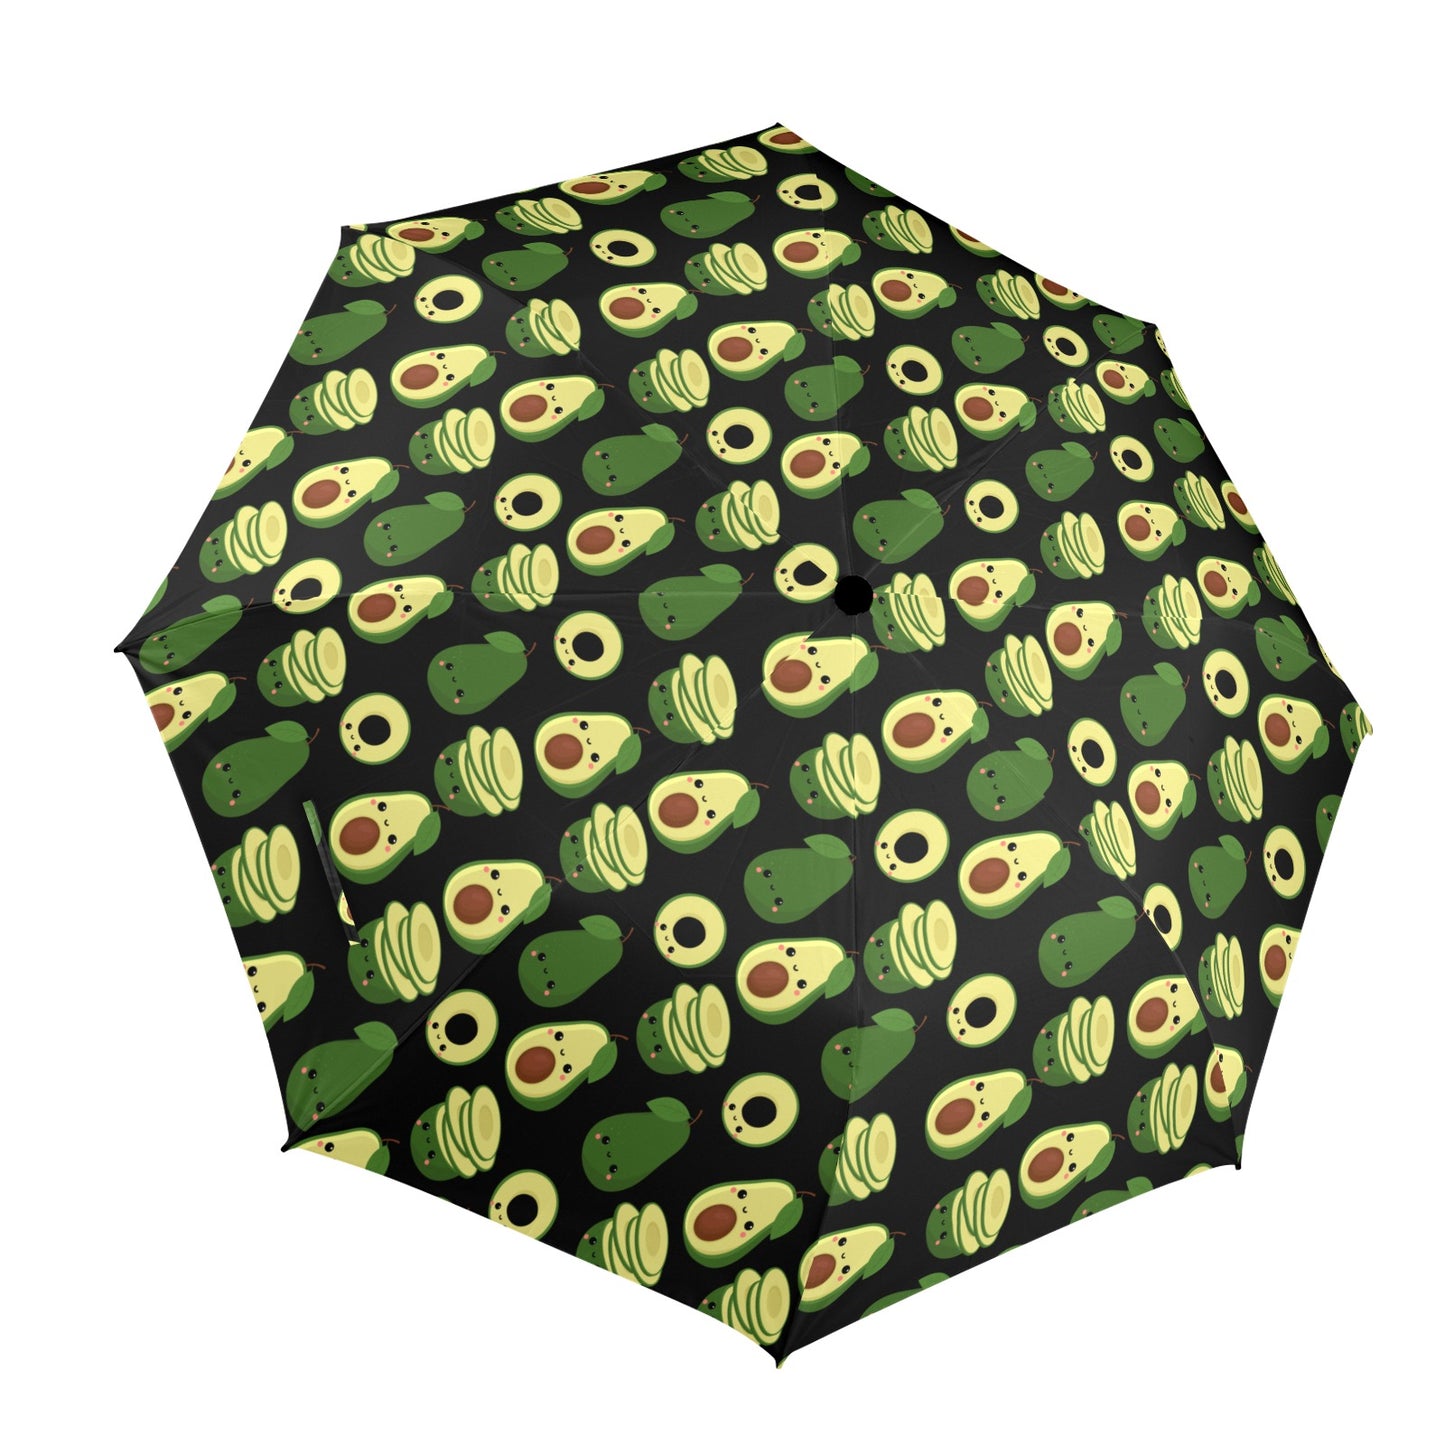 Cute Avocados - Semi-Automatic Foldable Umbrella Semi-Automatic Foldable Umbrella